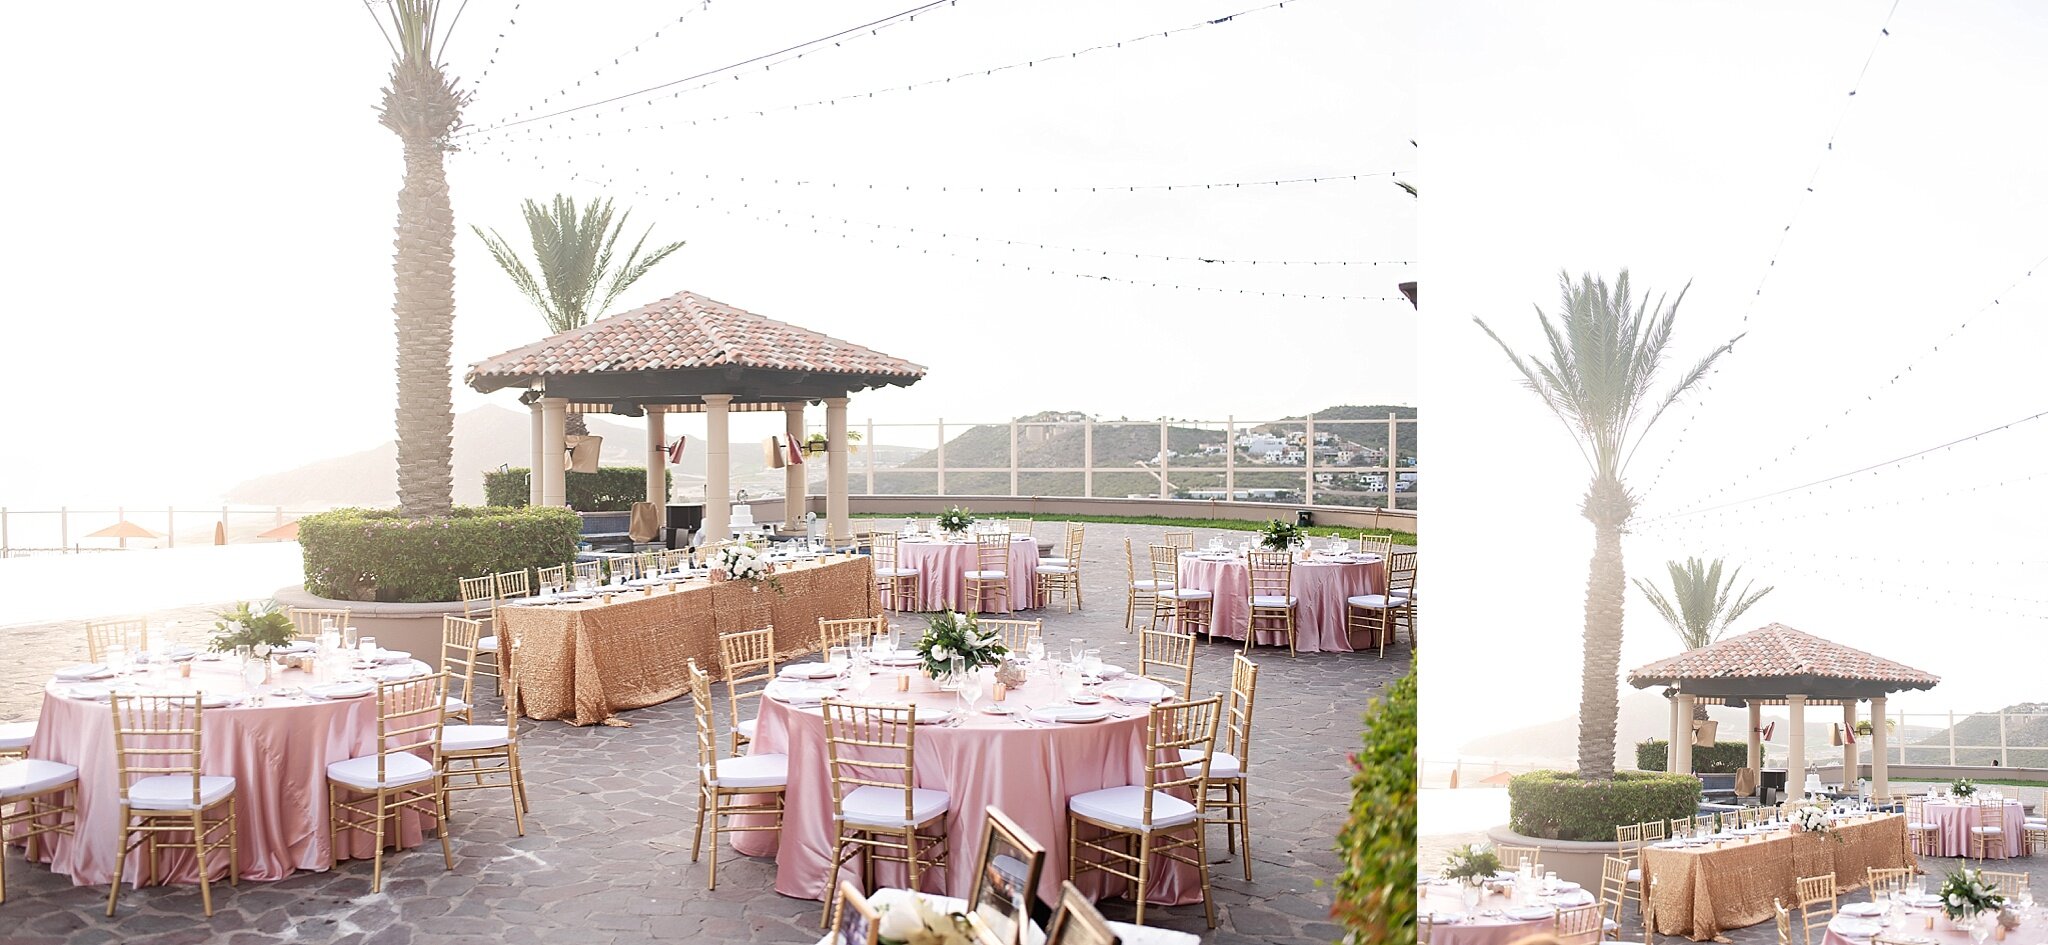 rooftop poolside wedding reception destination pueblo bonito sunset beach mexico